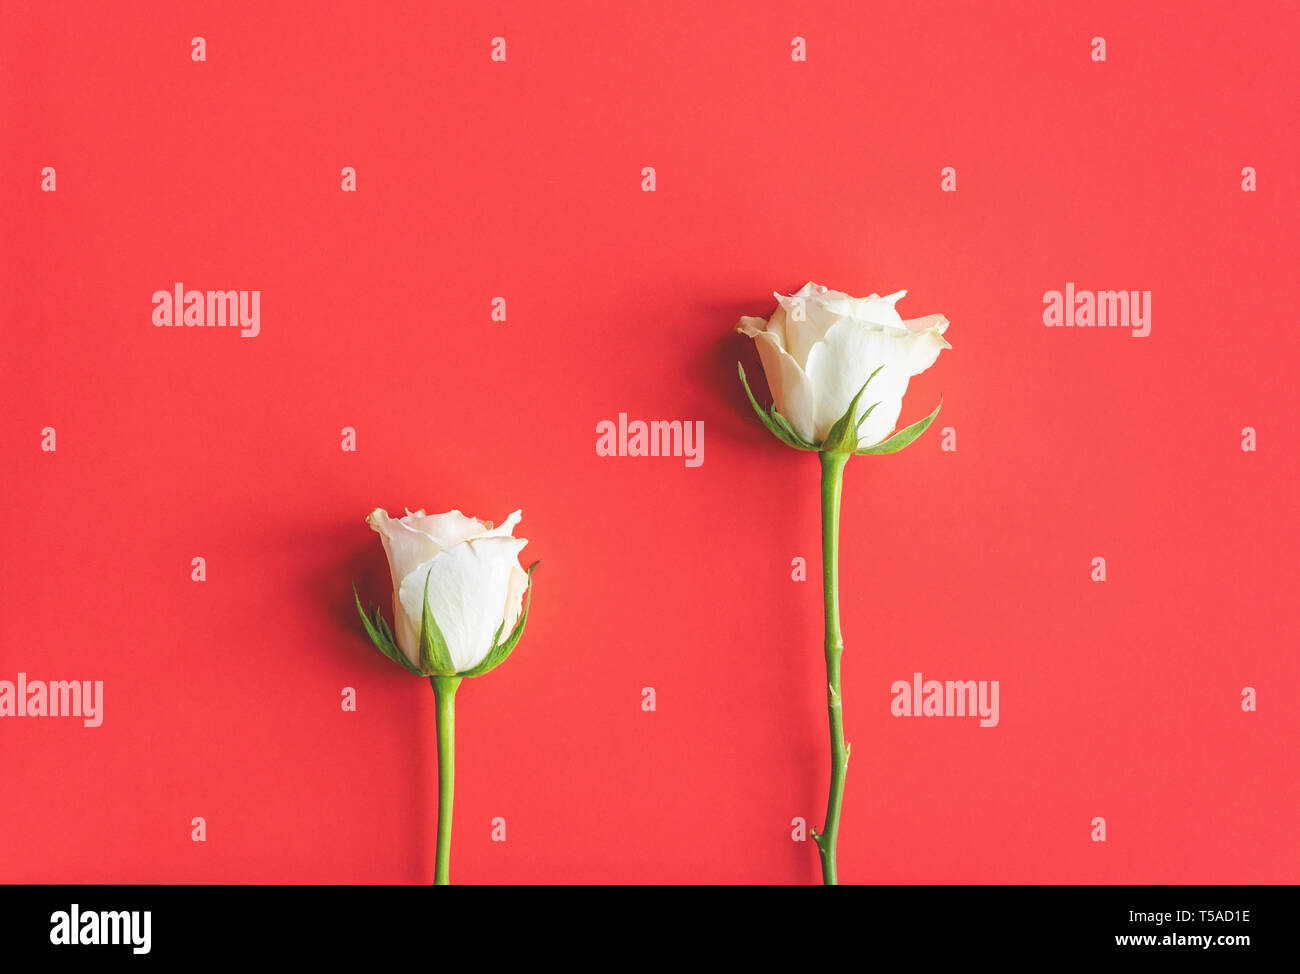 La vie toujours composé de deux roses blanches contre des coraux vivants (coloré de couleur Pantone 2019) Contexte Banque D'Images